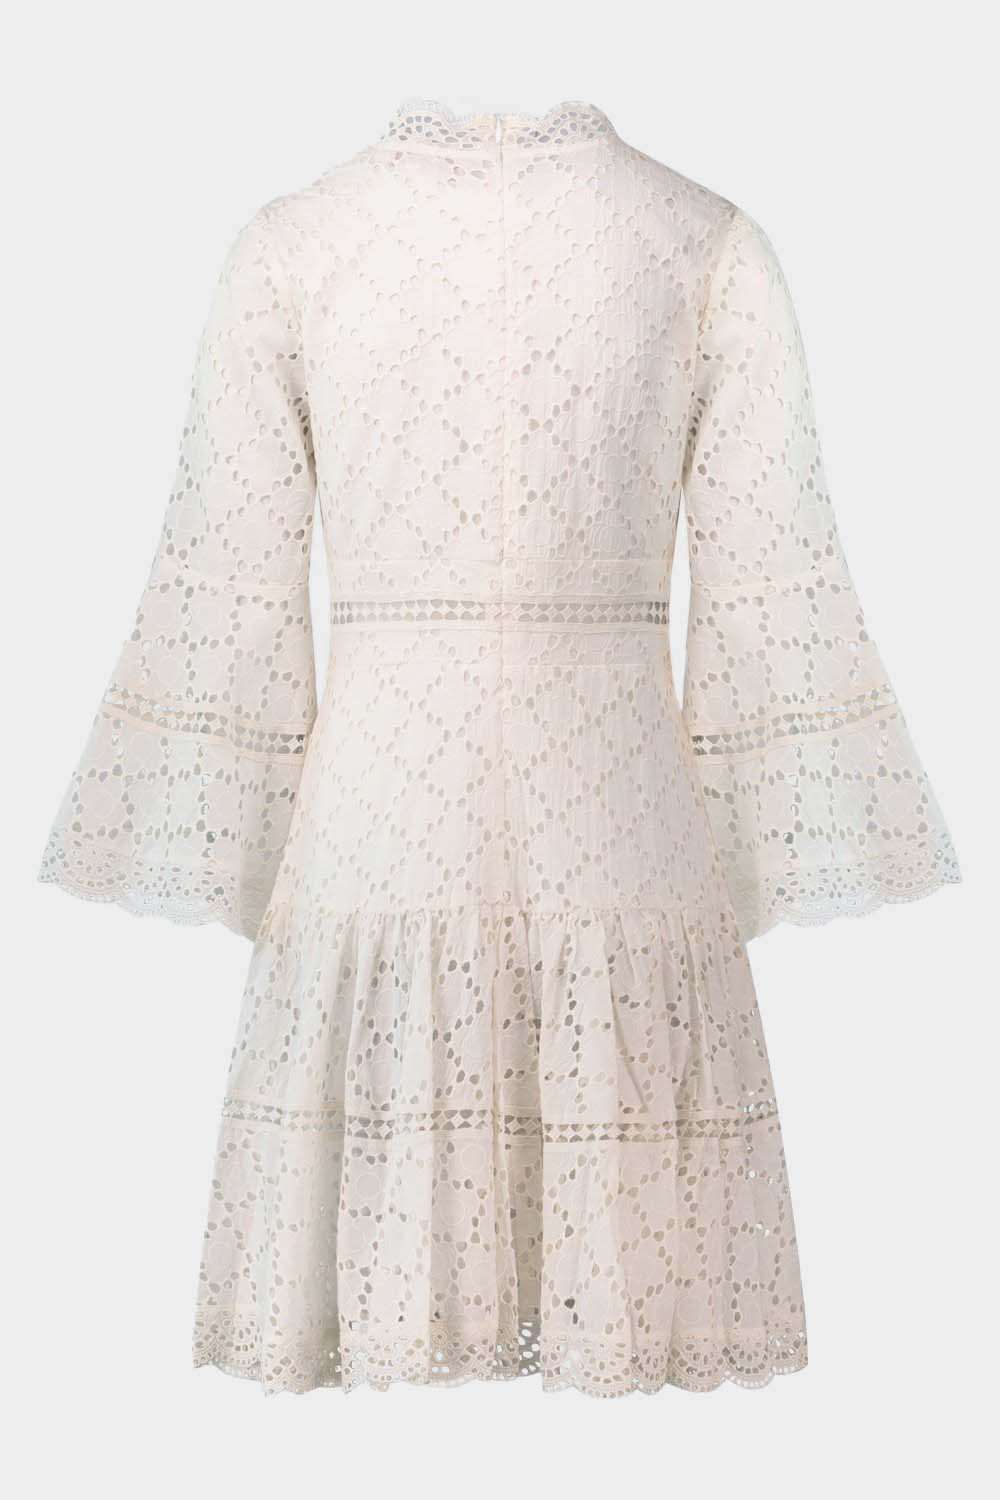 שמלת ABLYA לנשים עיטורי תחרה RENE DERHY Vendome online | ונדום .